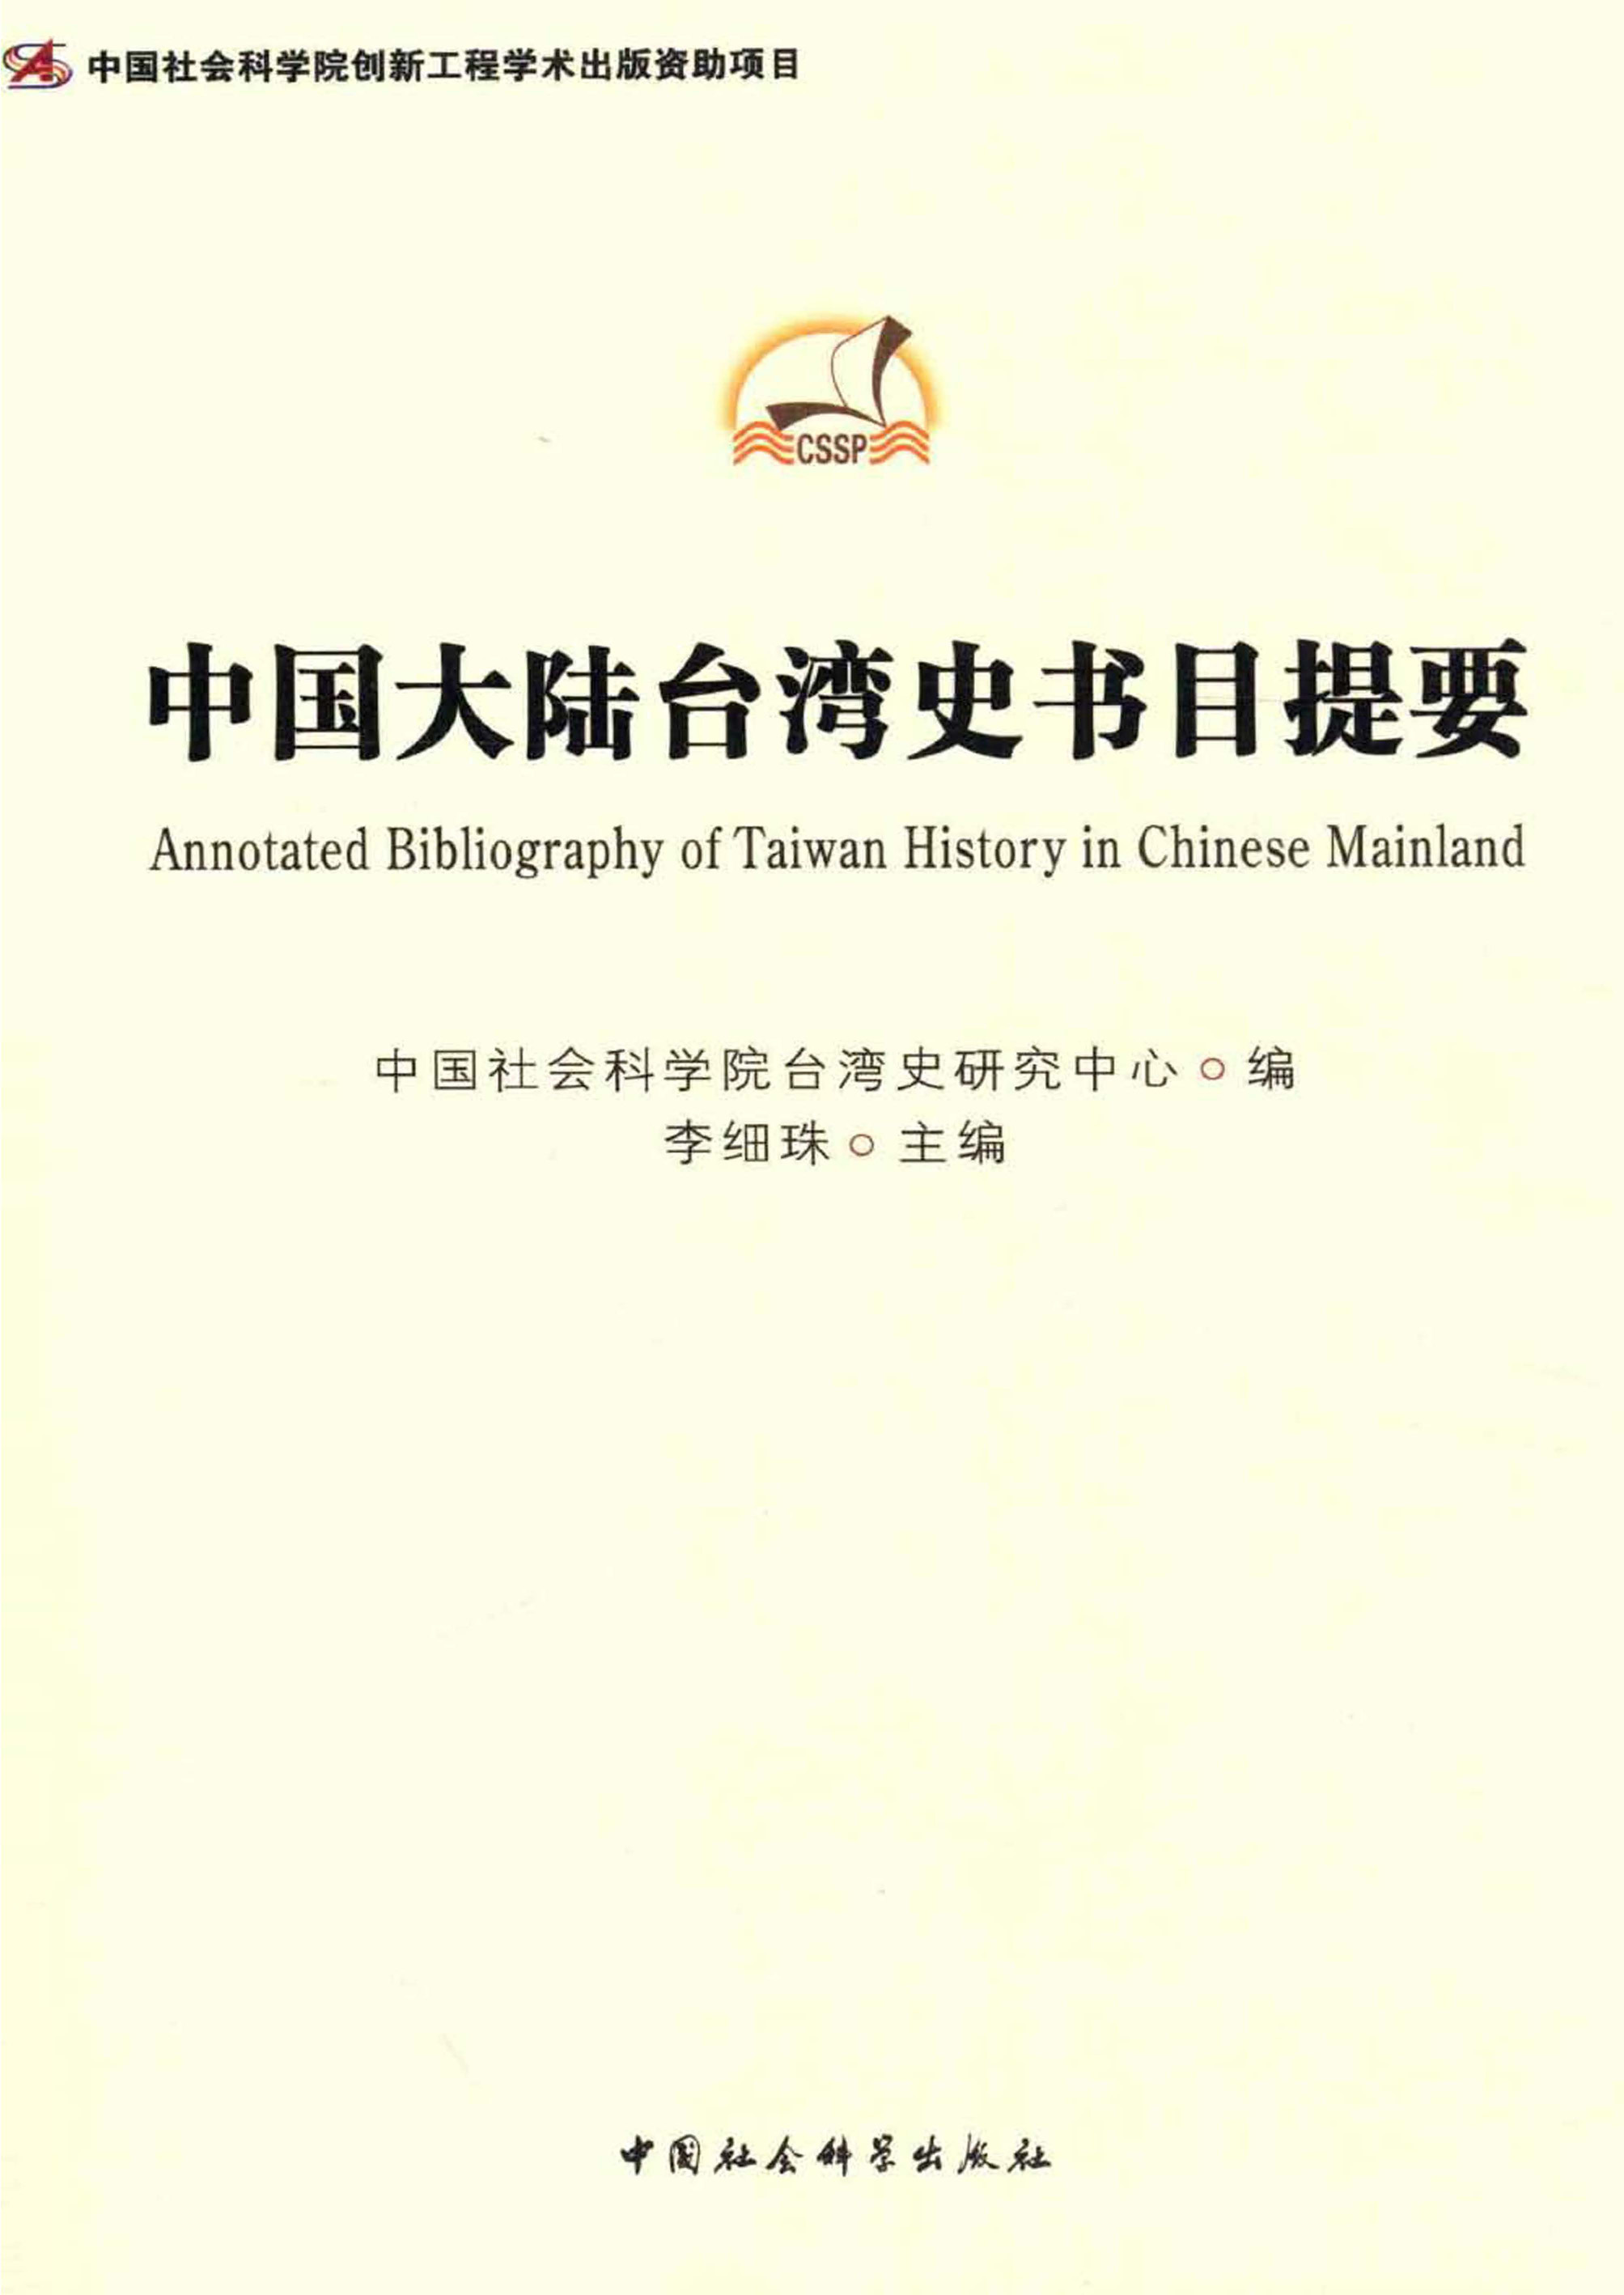 中国大陆台湾史书目提要-中国社会科学出版社